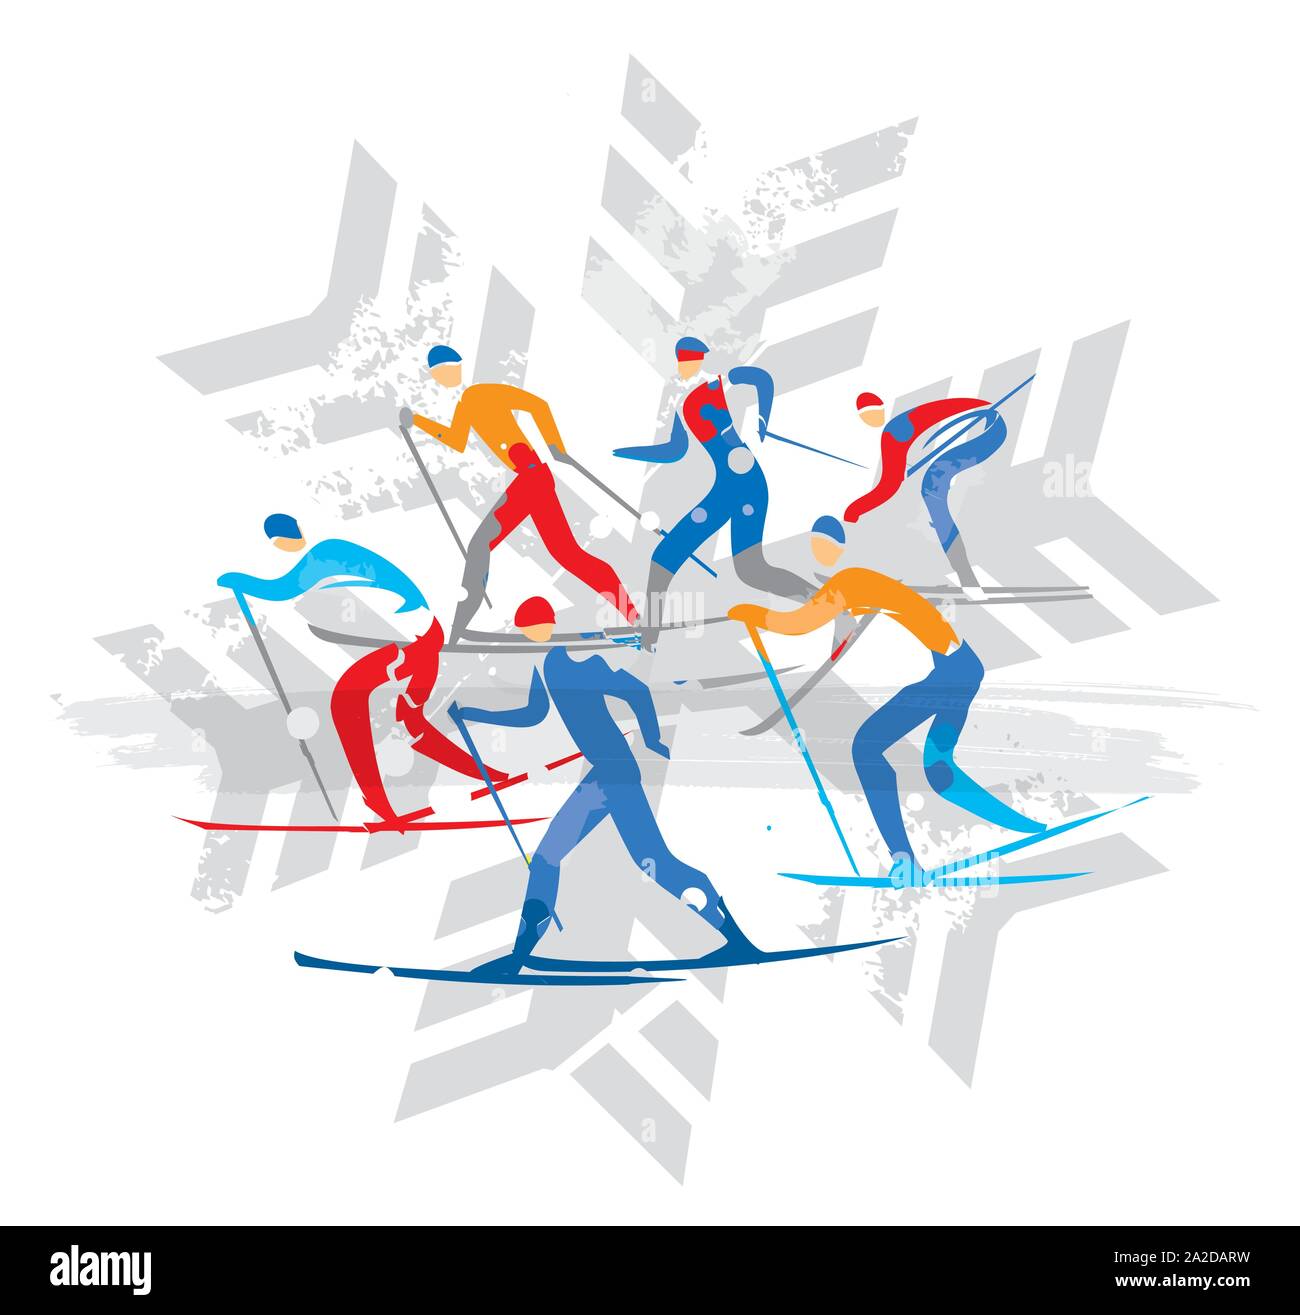 Cross Country Ski Racers sur flocon de l'arrière-plan. Un dessin stylisé expressif de pistes de ski de concurrents. Backgond isolé sur blanc. Illustration de Vecteur